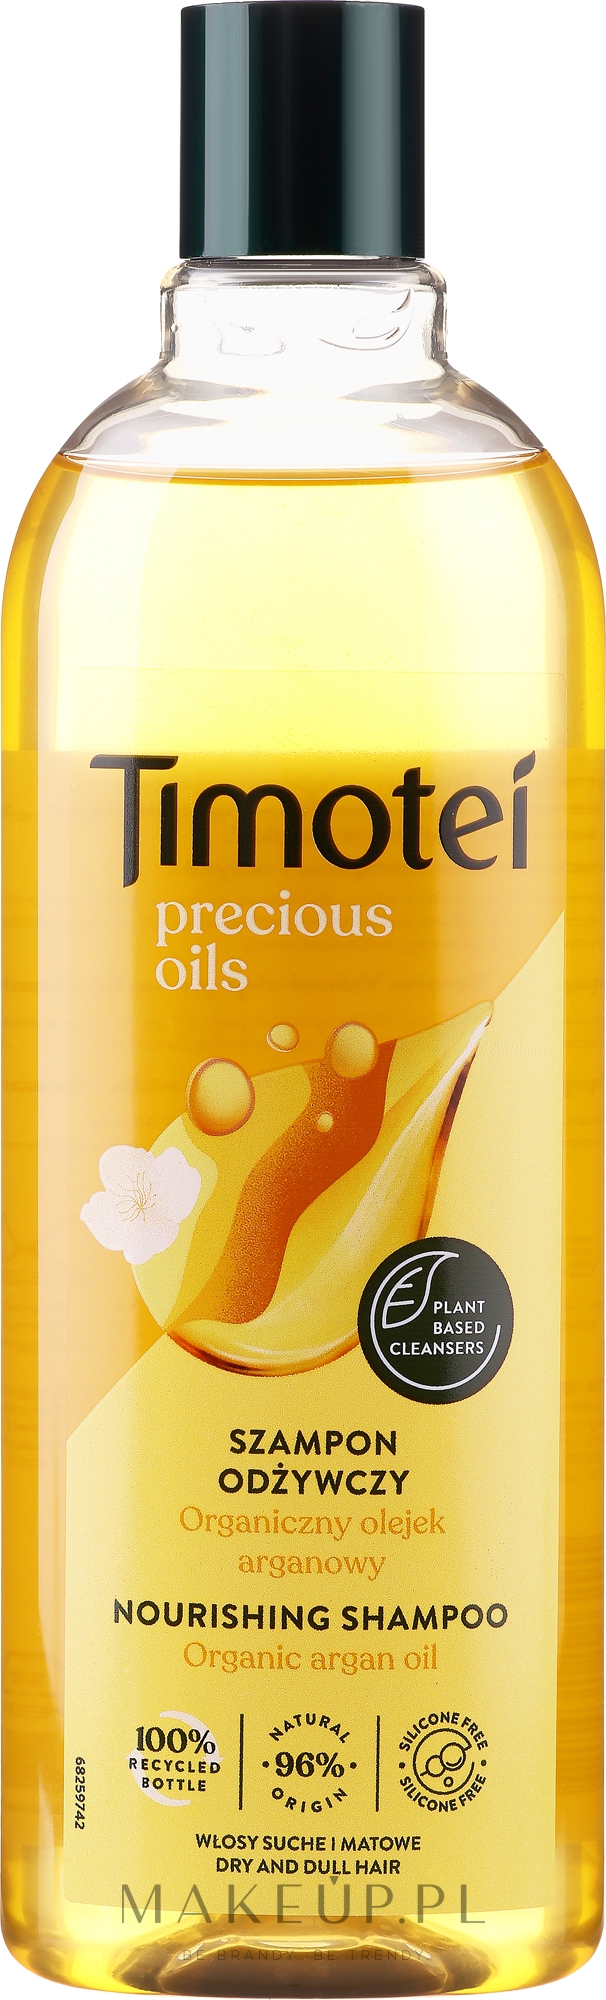 timotei szampon arganowy